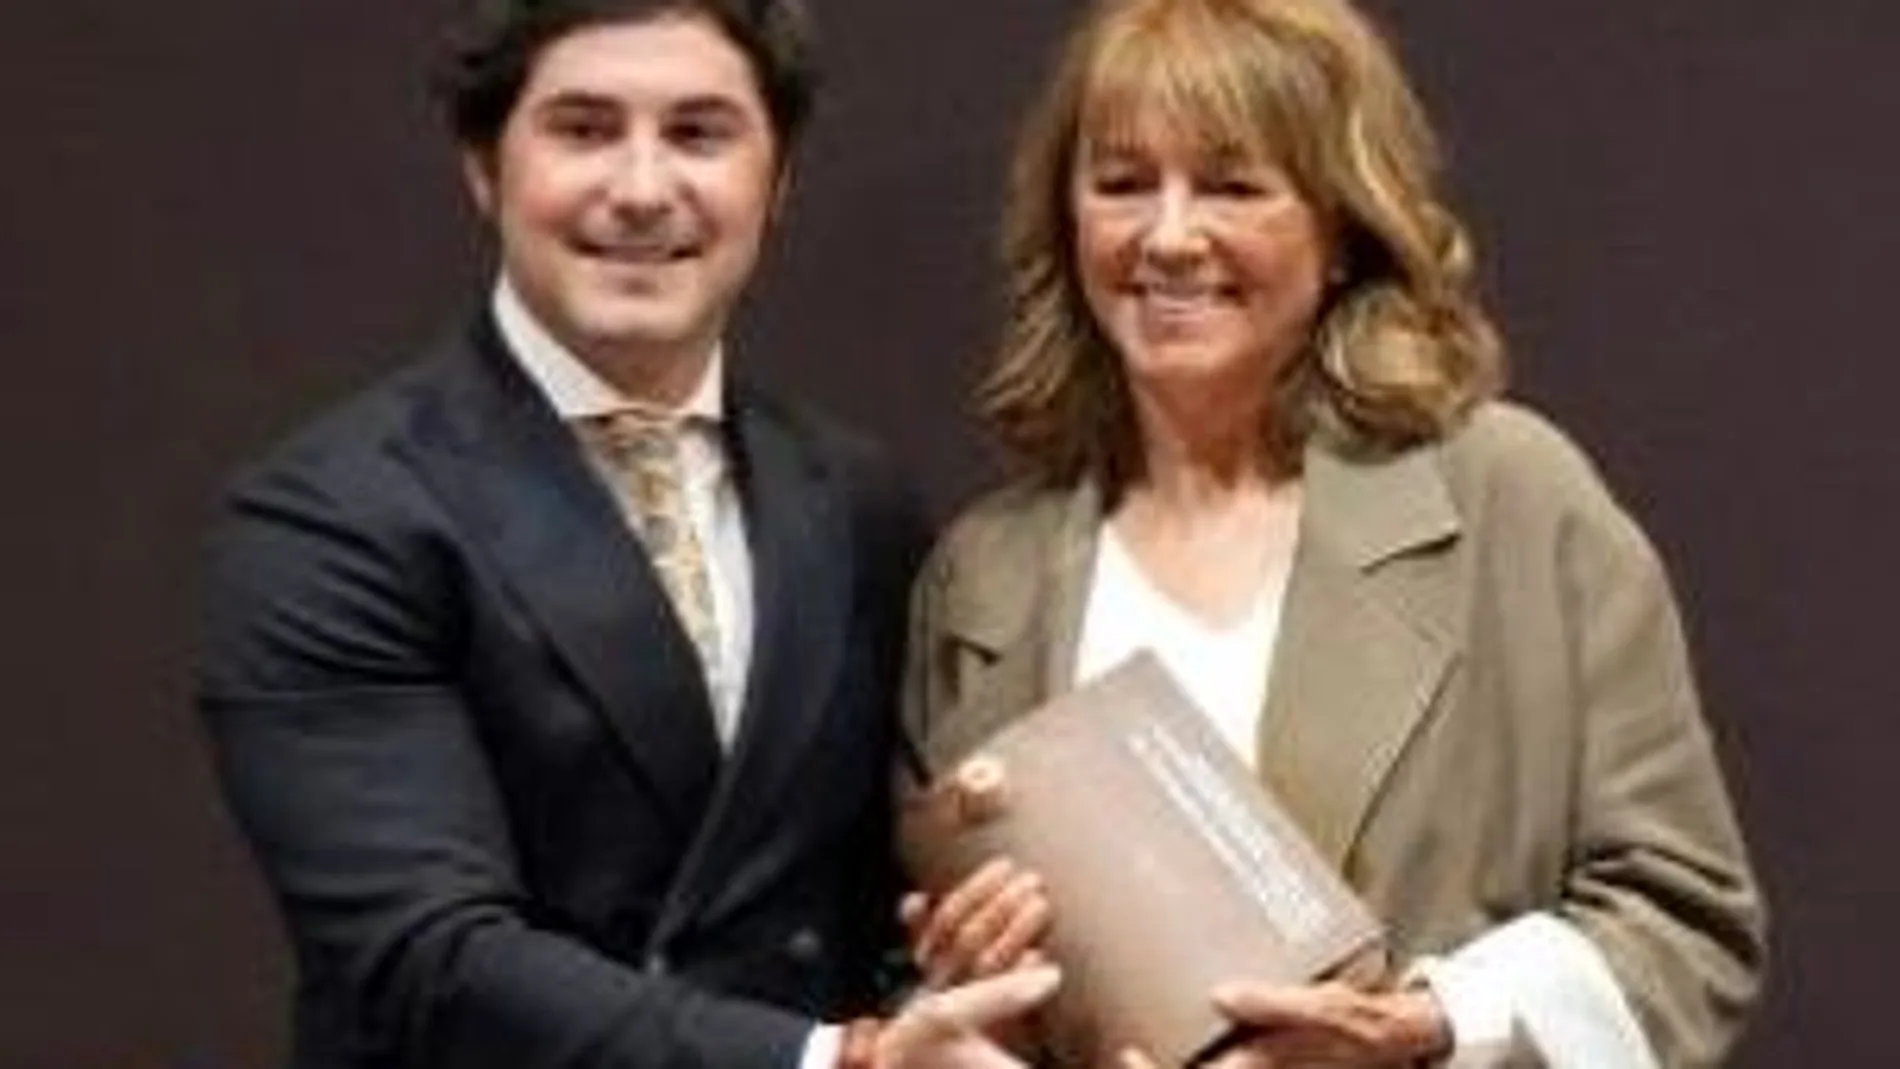 Mario Martín, Coordinador de la Guía Vinos Gourmets entregando el premio a Victoria Pariente, Fundadora de Bodegas José Pariente